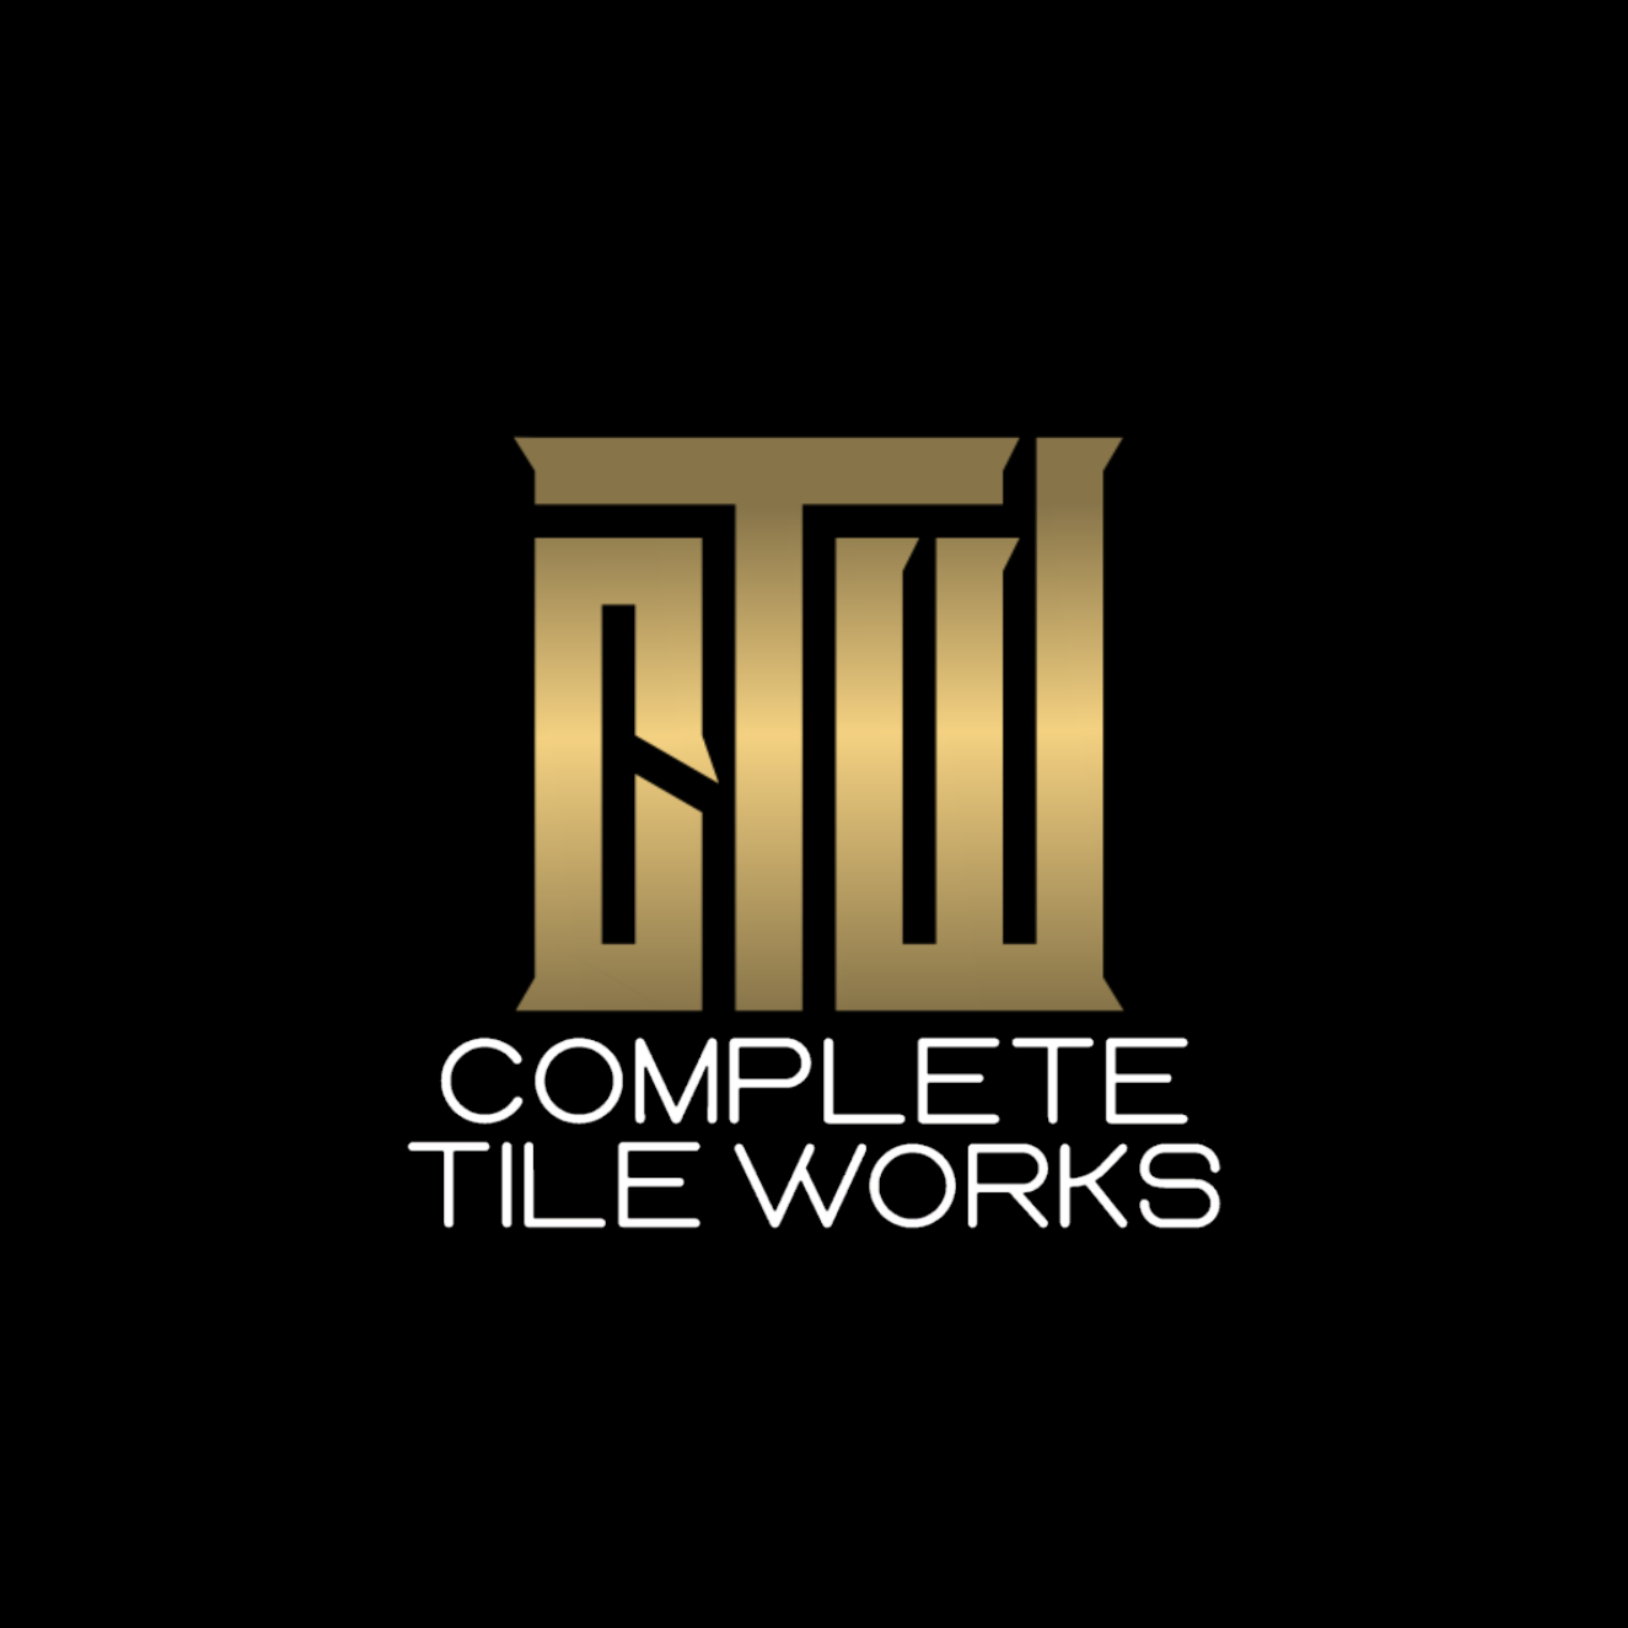 Complete Tile Works